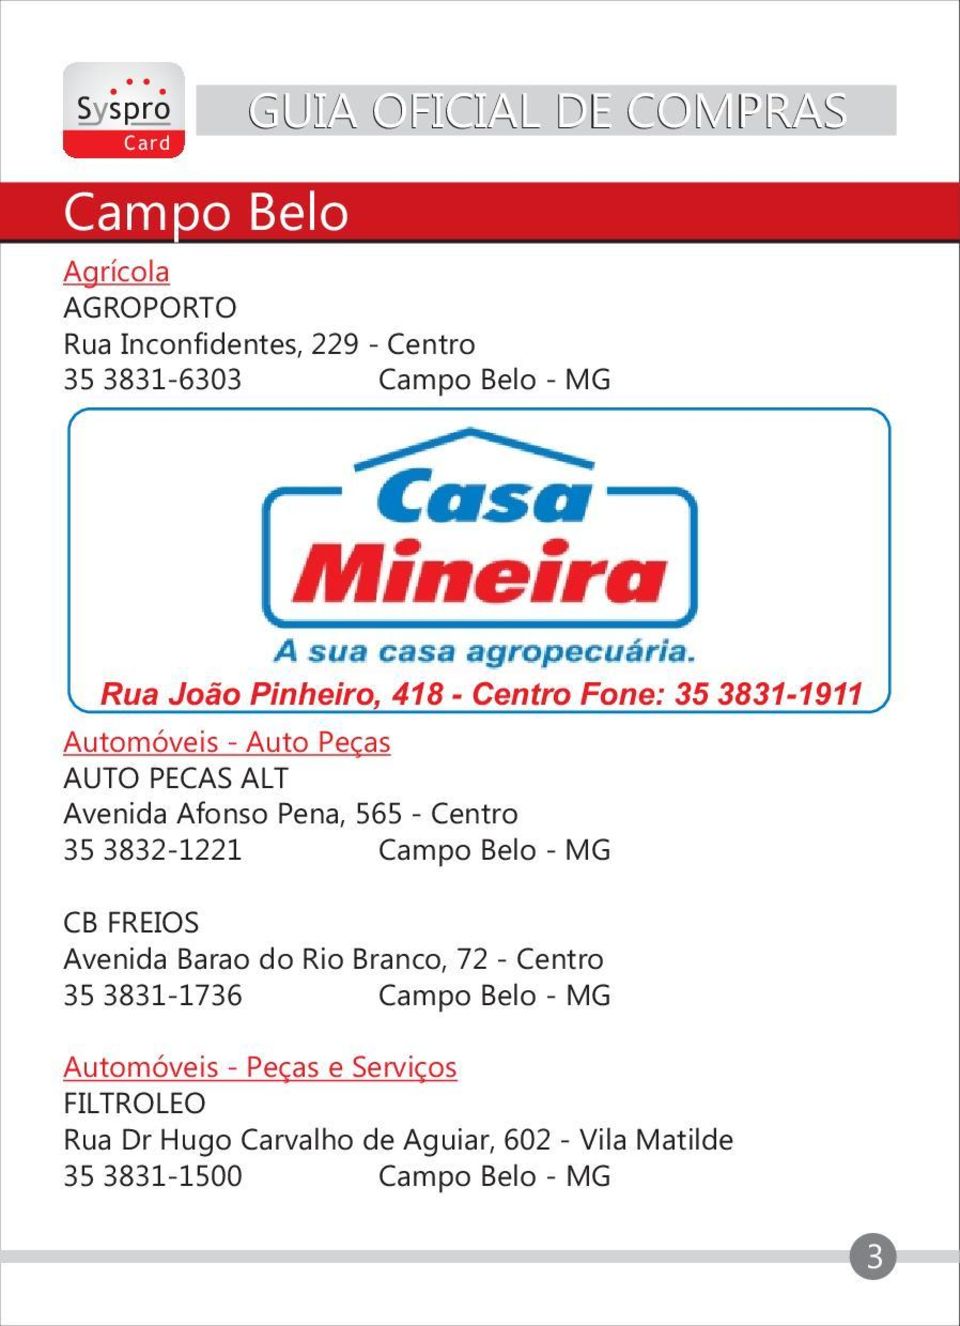 3832-1221 Campo Belo - MG CB FREIOS Avenida Barao do Rio Branco, 72 - Centro 35 3831-1736 Campo Belo - MG